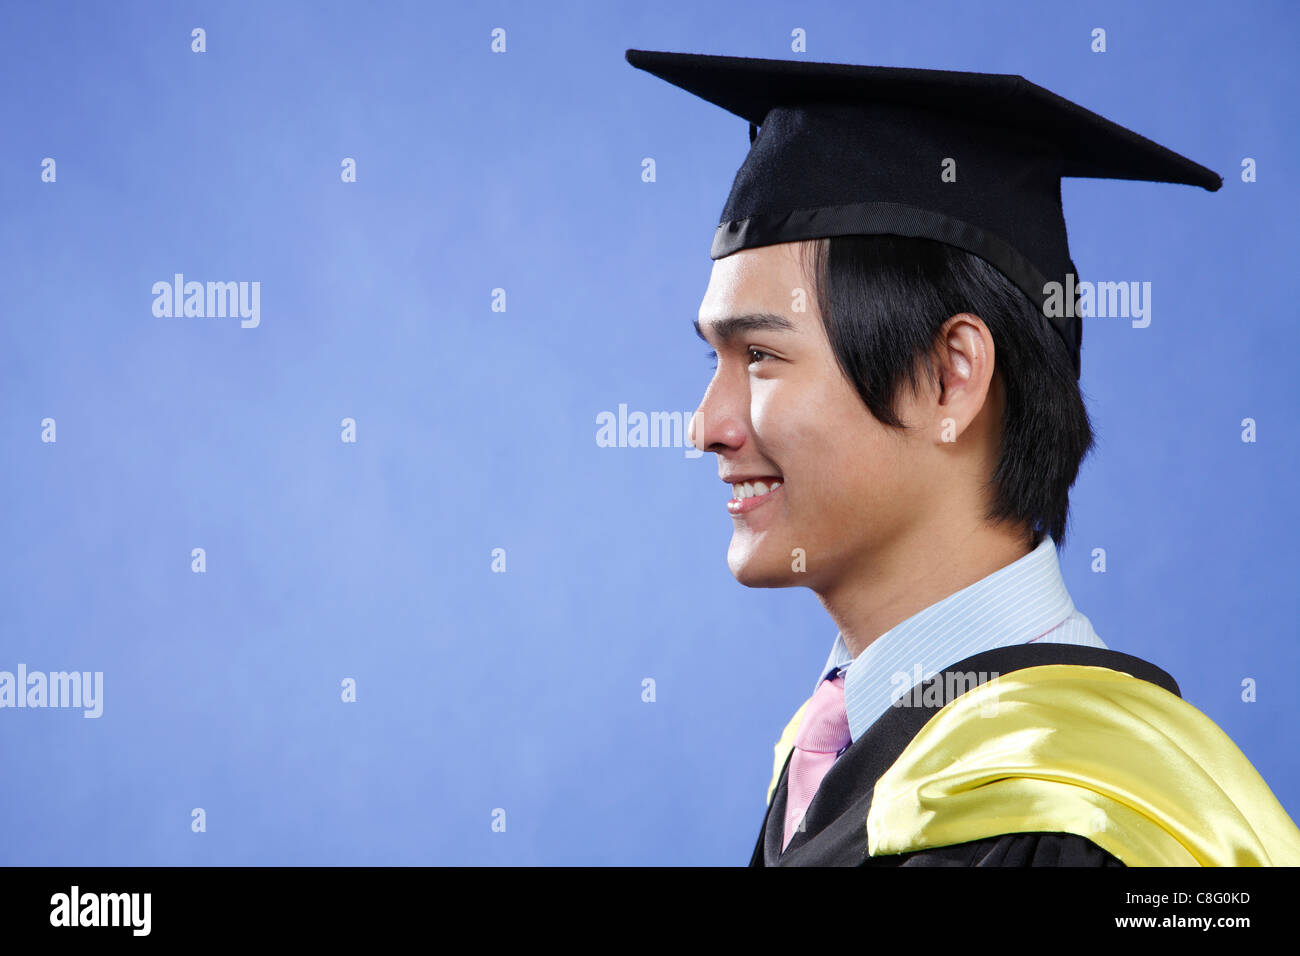 Profil des étudiants diplômés de sexe masculin Banque D'Images